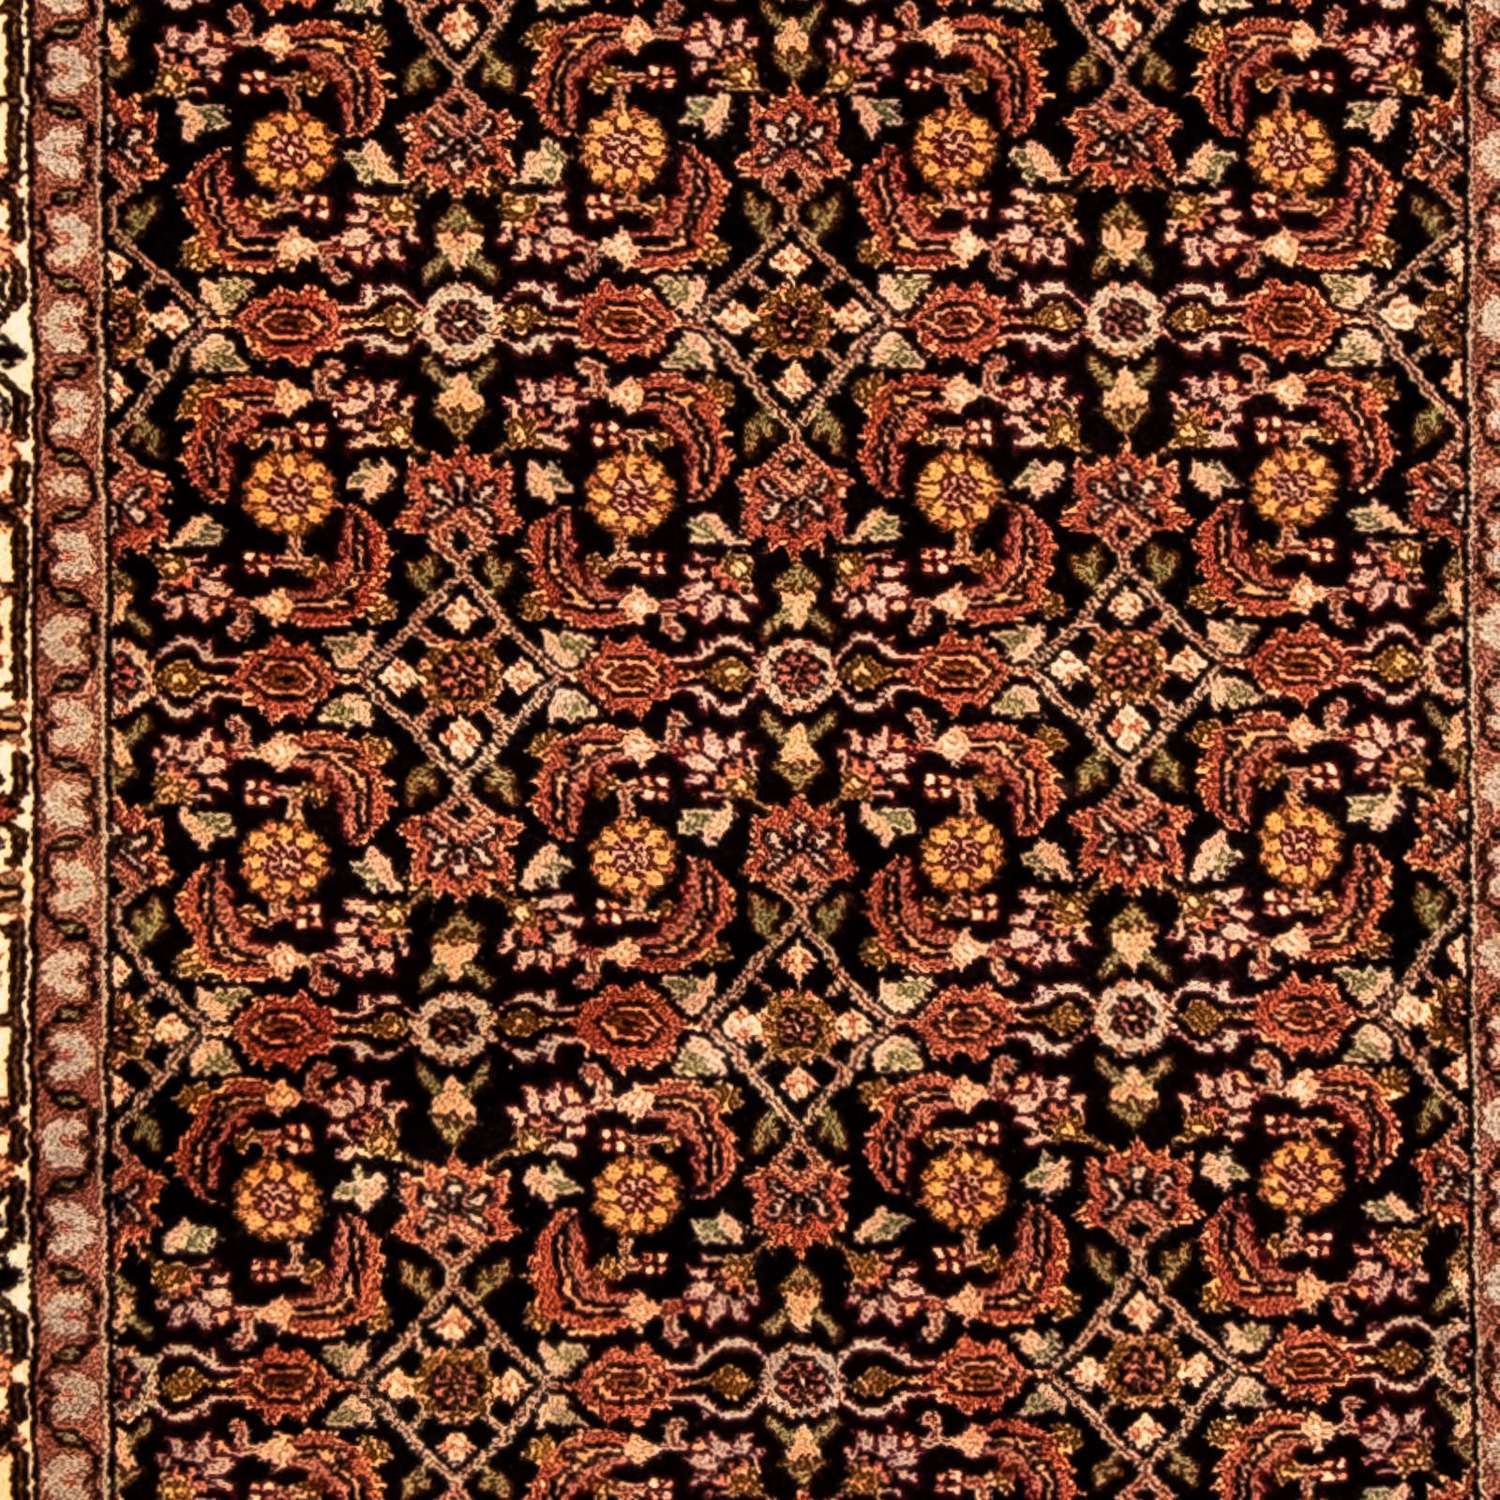 Løber Persisk tæppe - Bijar - 298 x 82 cm - flerfarvet